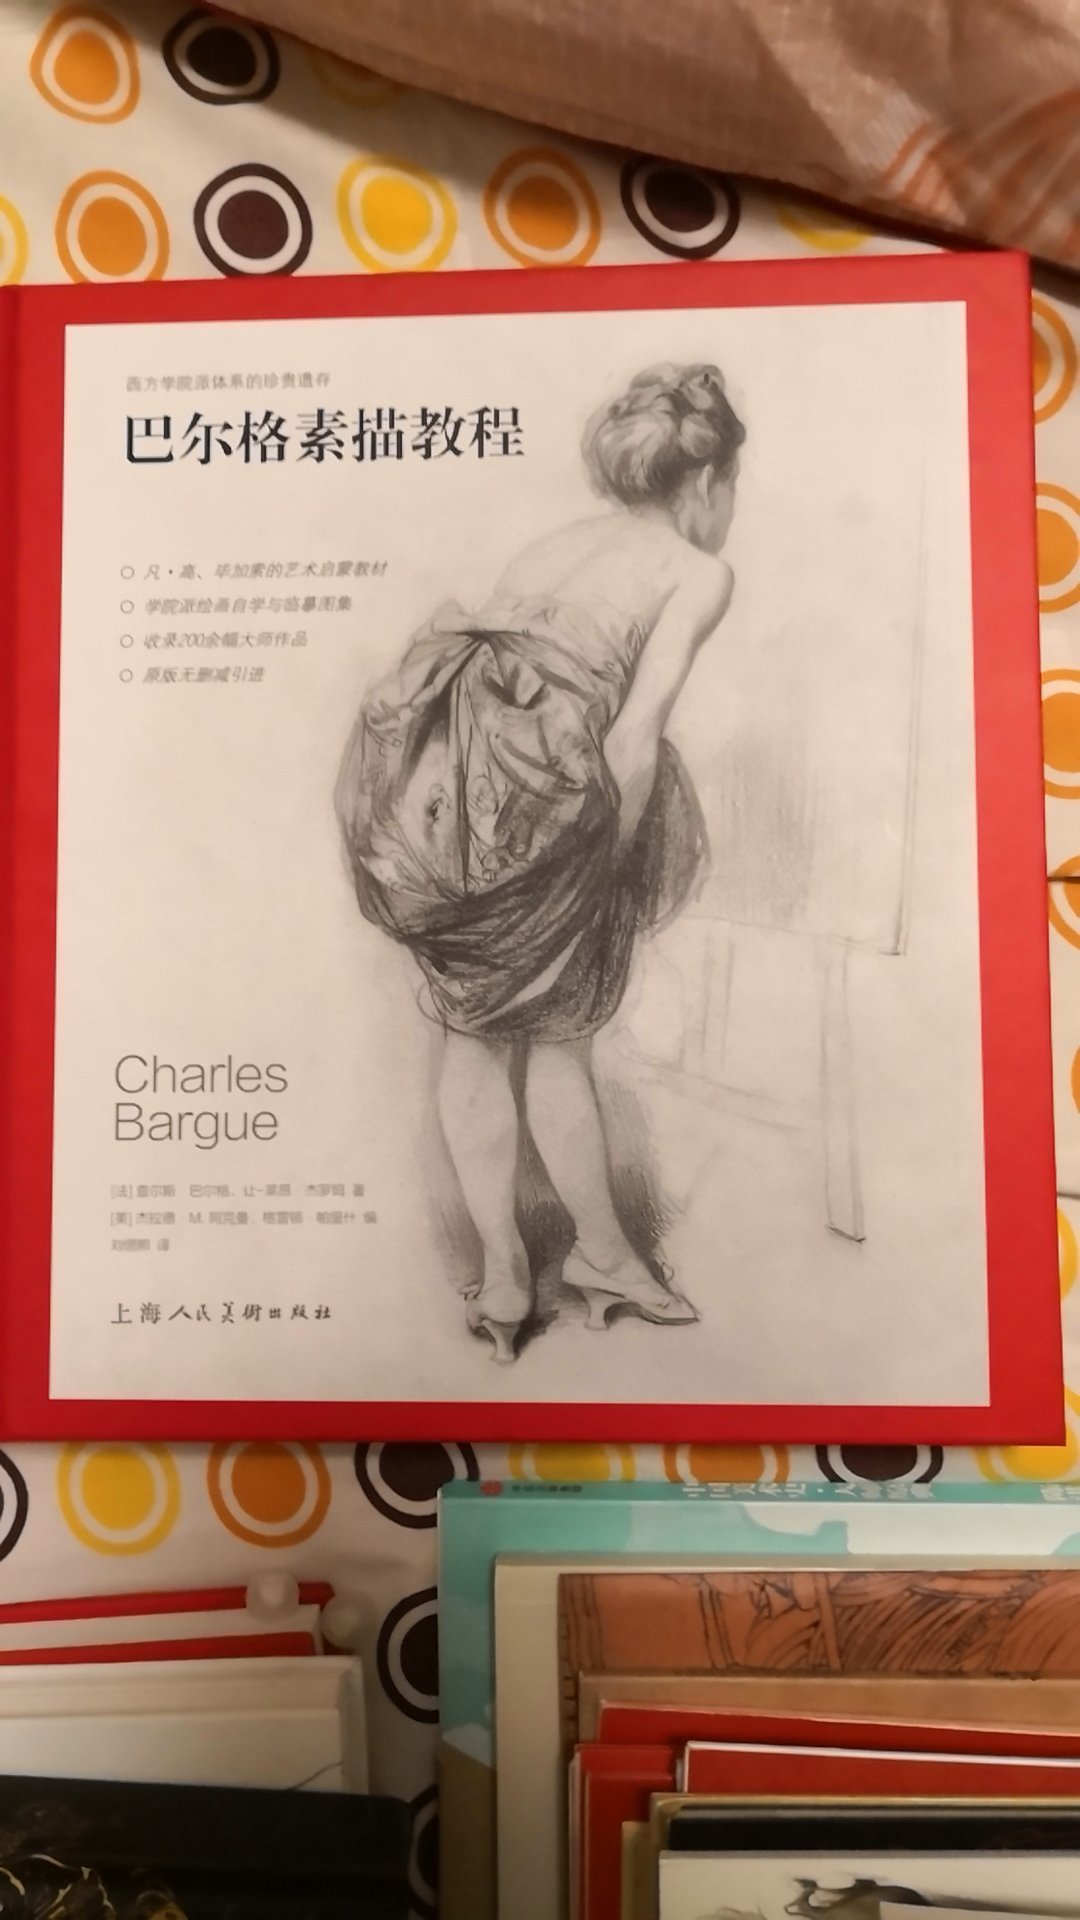 　　　《巴尔格素描教程》完整重印了查尔斯&middot;巴尔格和让-莱昂&middot;杰罗姆于19世纪60至70年代在巴黎出版的名著——《素描教程》（Coursde Dessin）。之后的半个世纪，这套由近200幅印刷品组成的教程成为了世界各地艺术学生在接触真人模特写生之前学习素描的优良之选。书中图片曾广泛用于世界各地的艺术学院，通称为“巴尔格图片”。文森特&middot;凡高曾两次独立临摹完本教程；毕加索在巴塞罗那美术学院